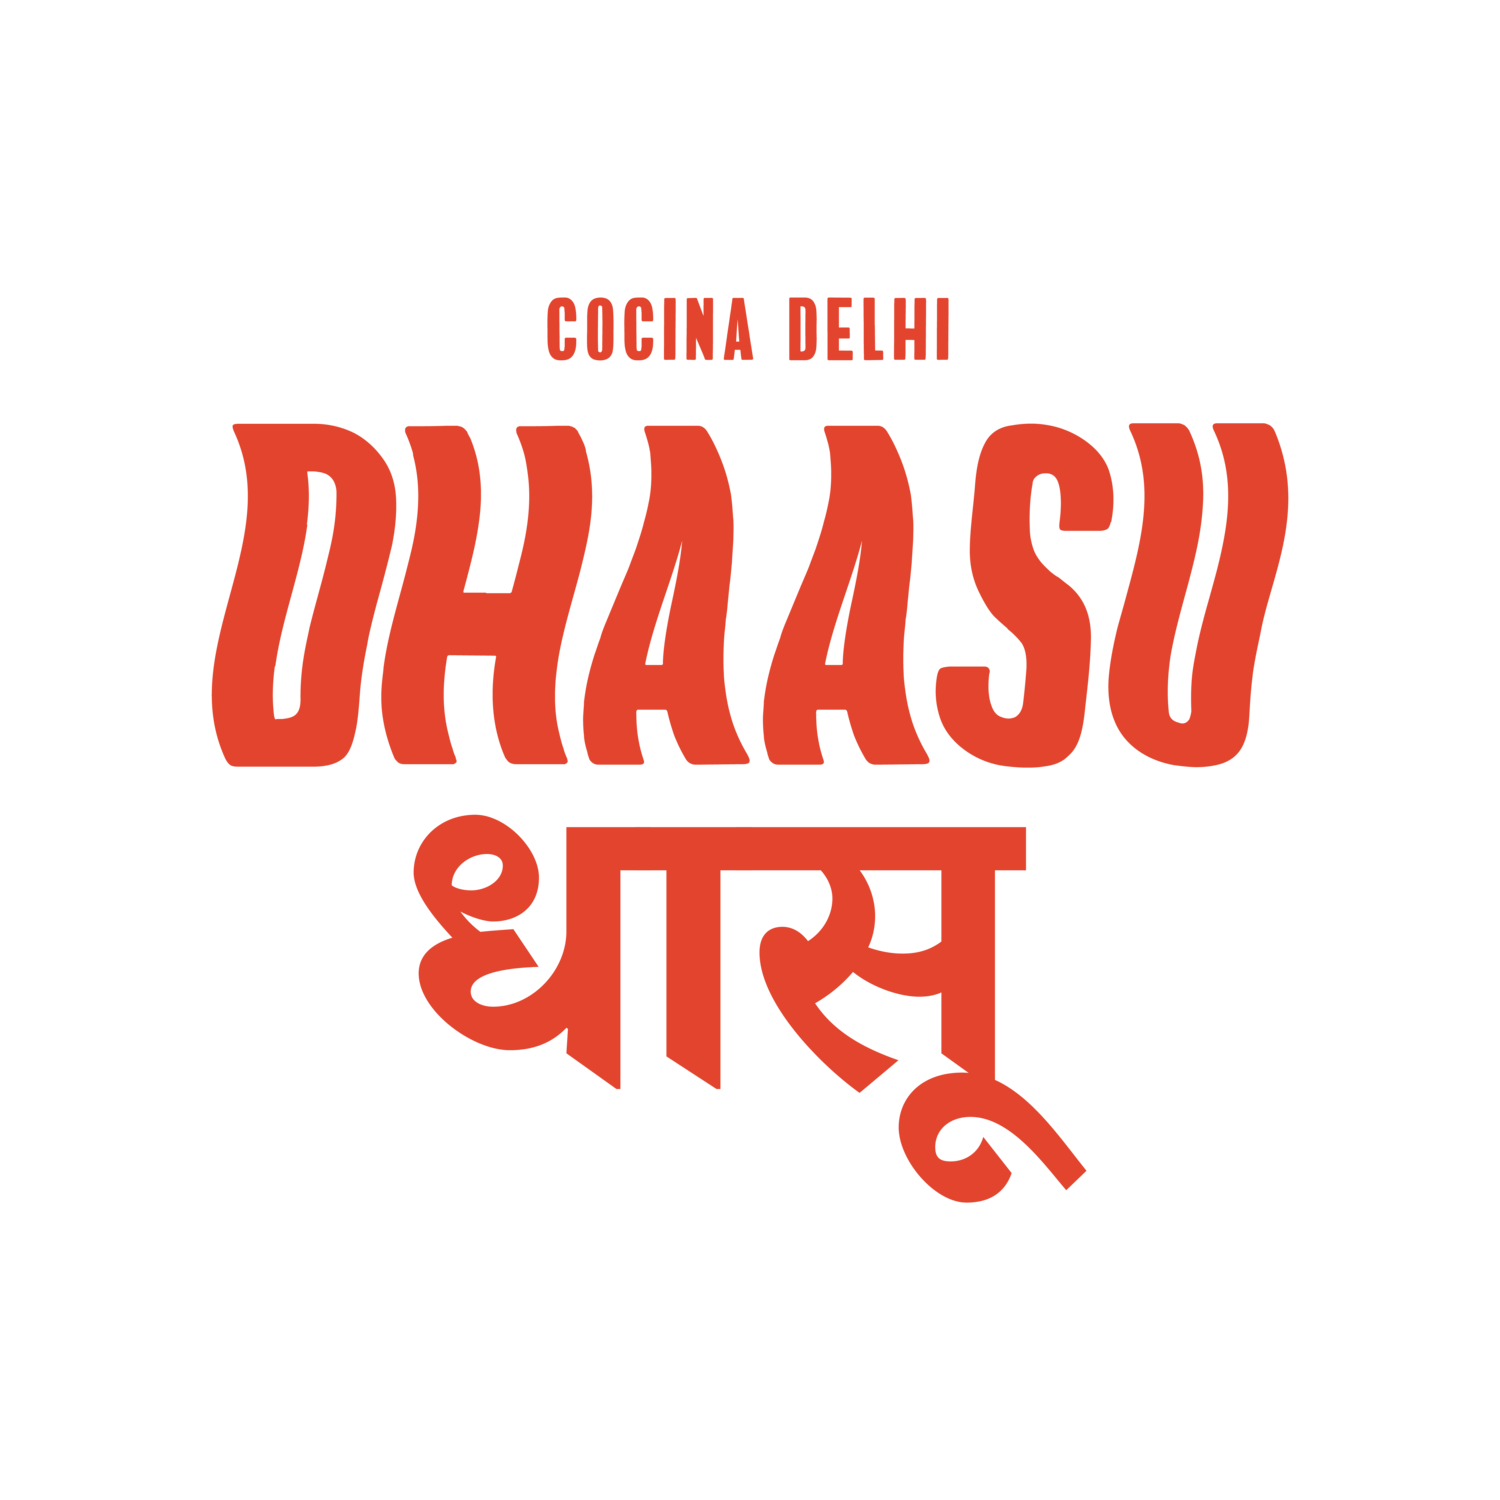 Dhaasu - Cocina Delhi